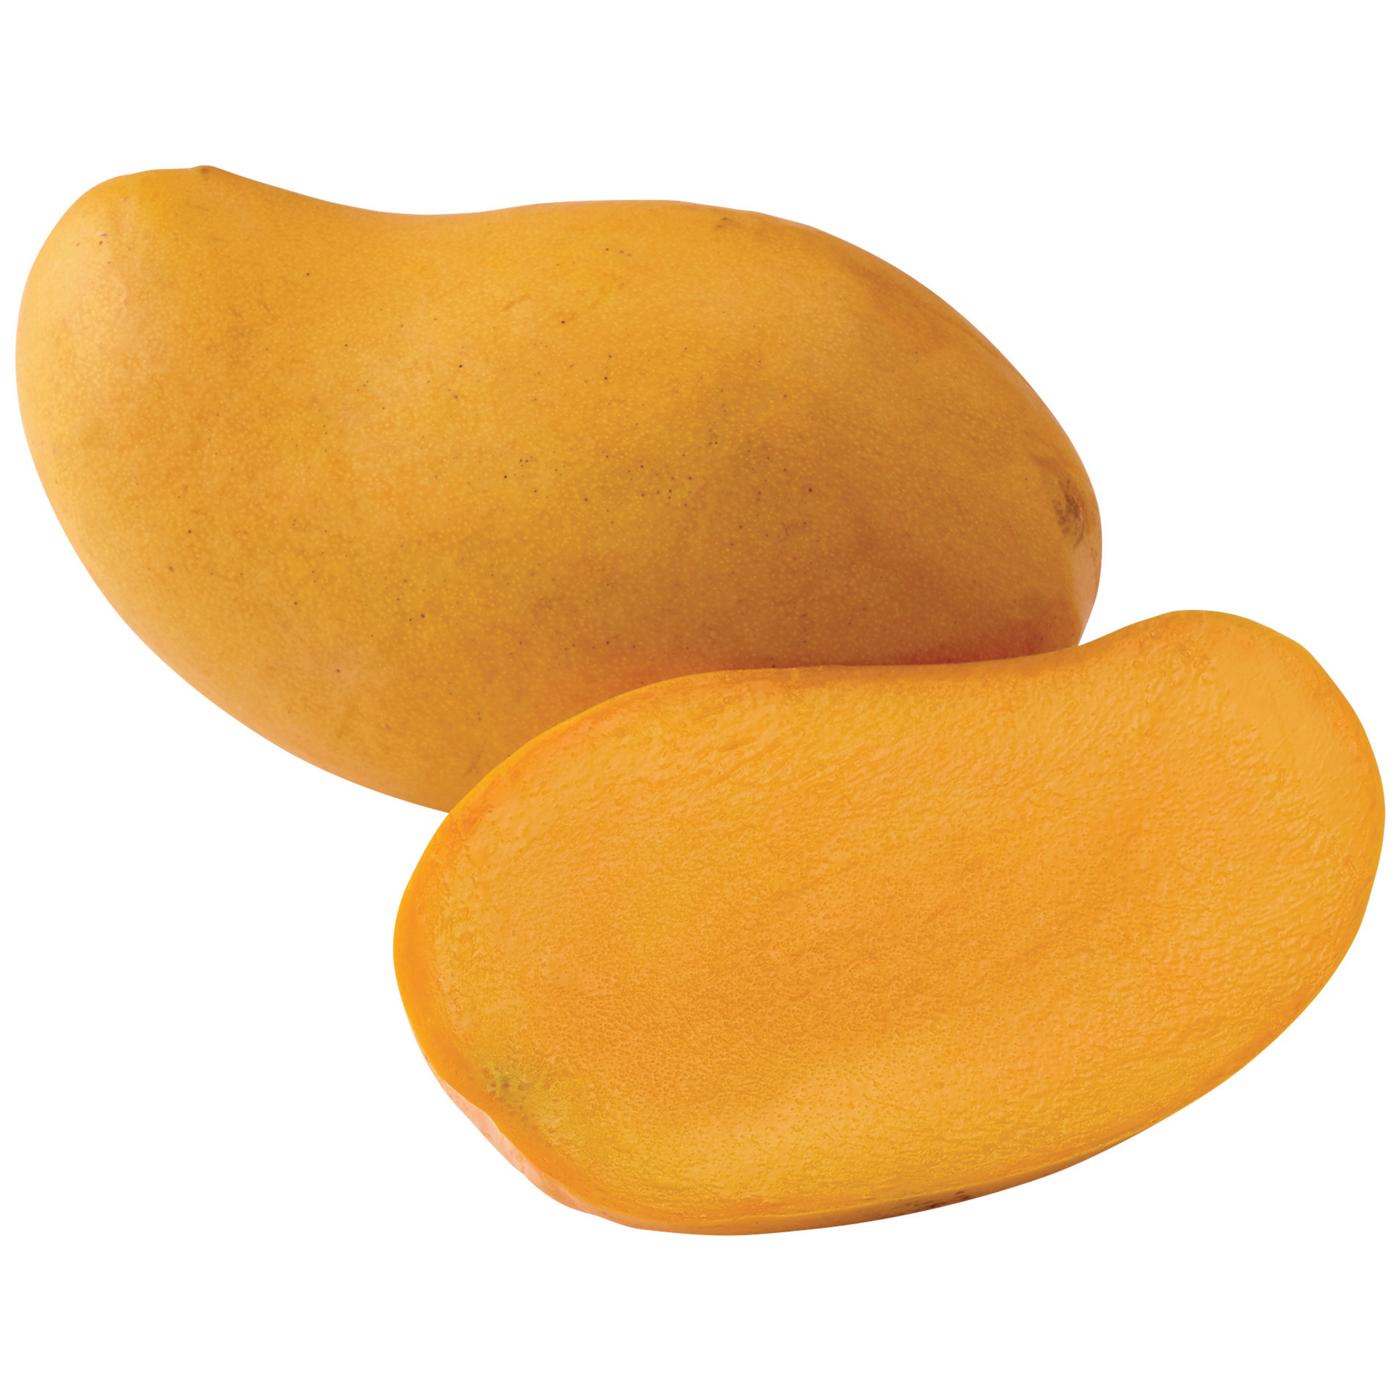 Fresh Large Ataulfo Mango; image 3 of 4